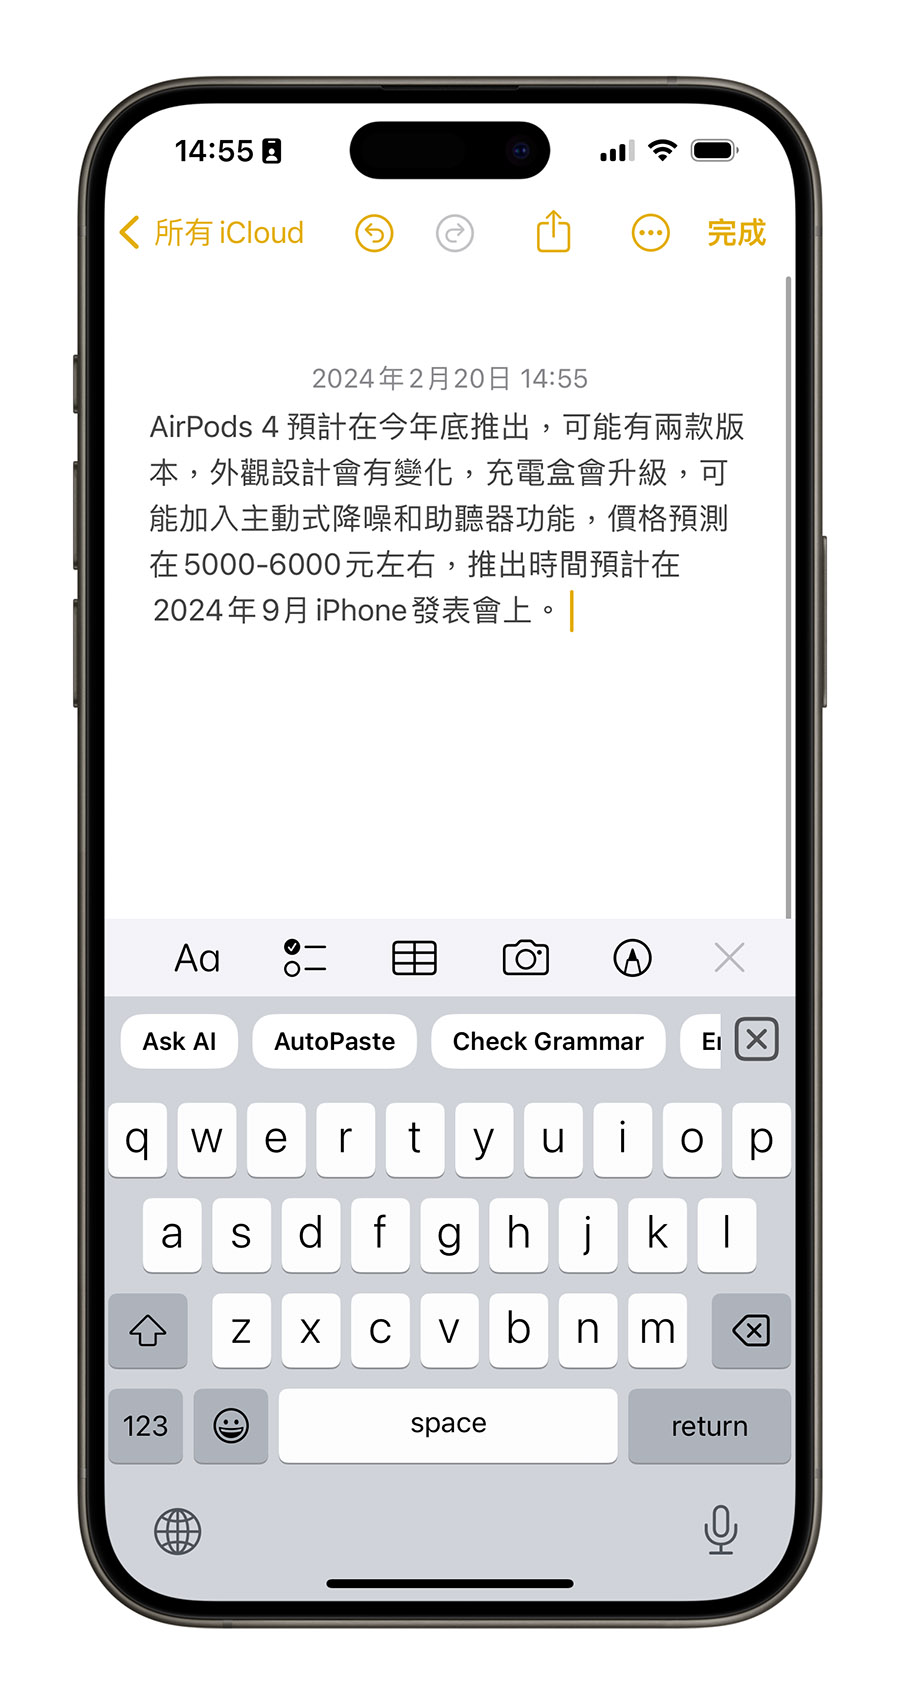 KeyAI iPhone iOS 鍵盤 App